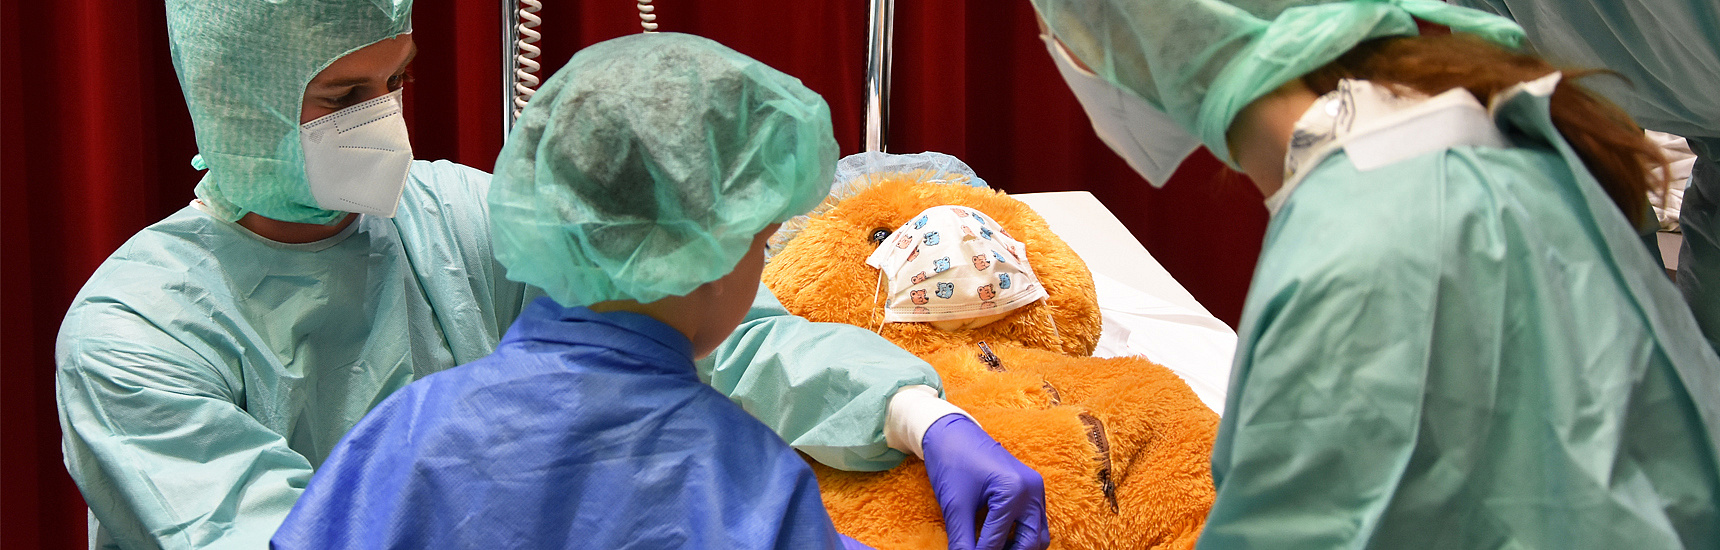 Teddybär als Patient